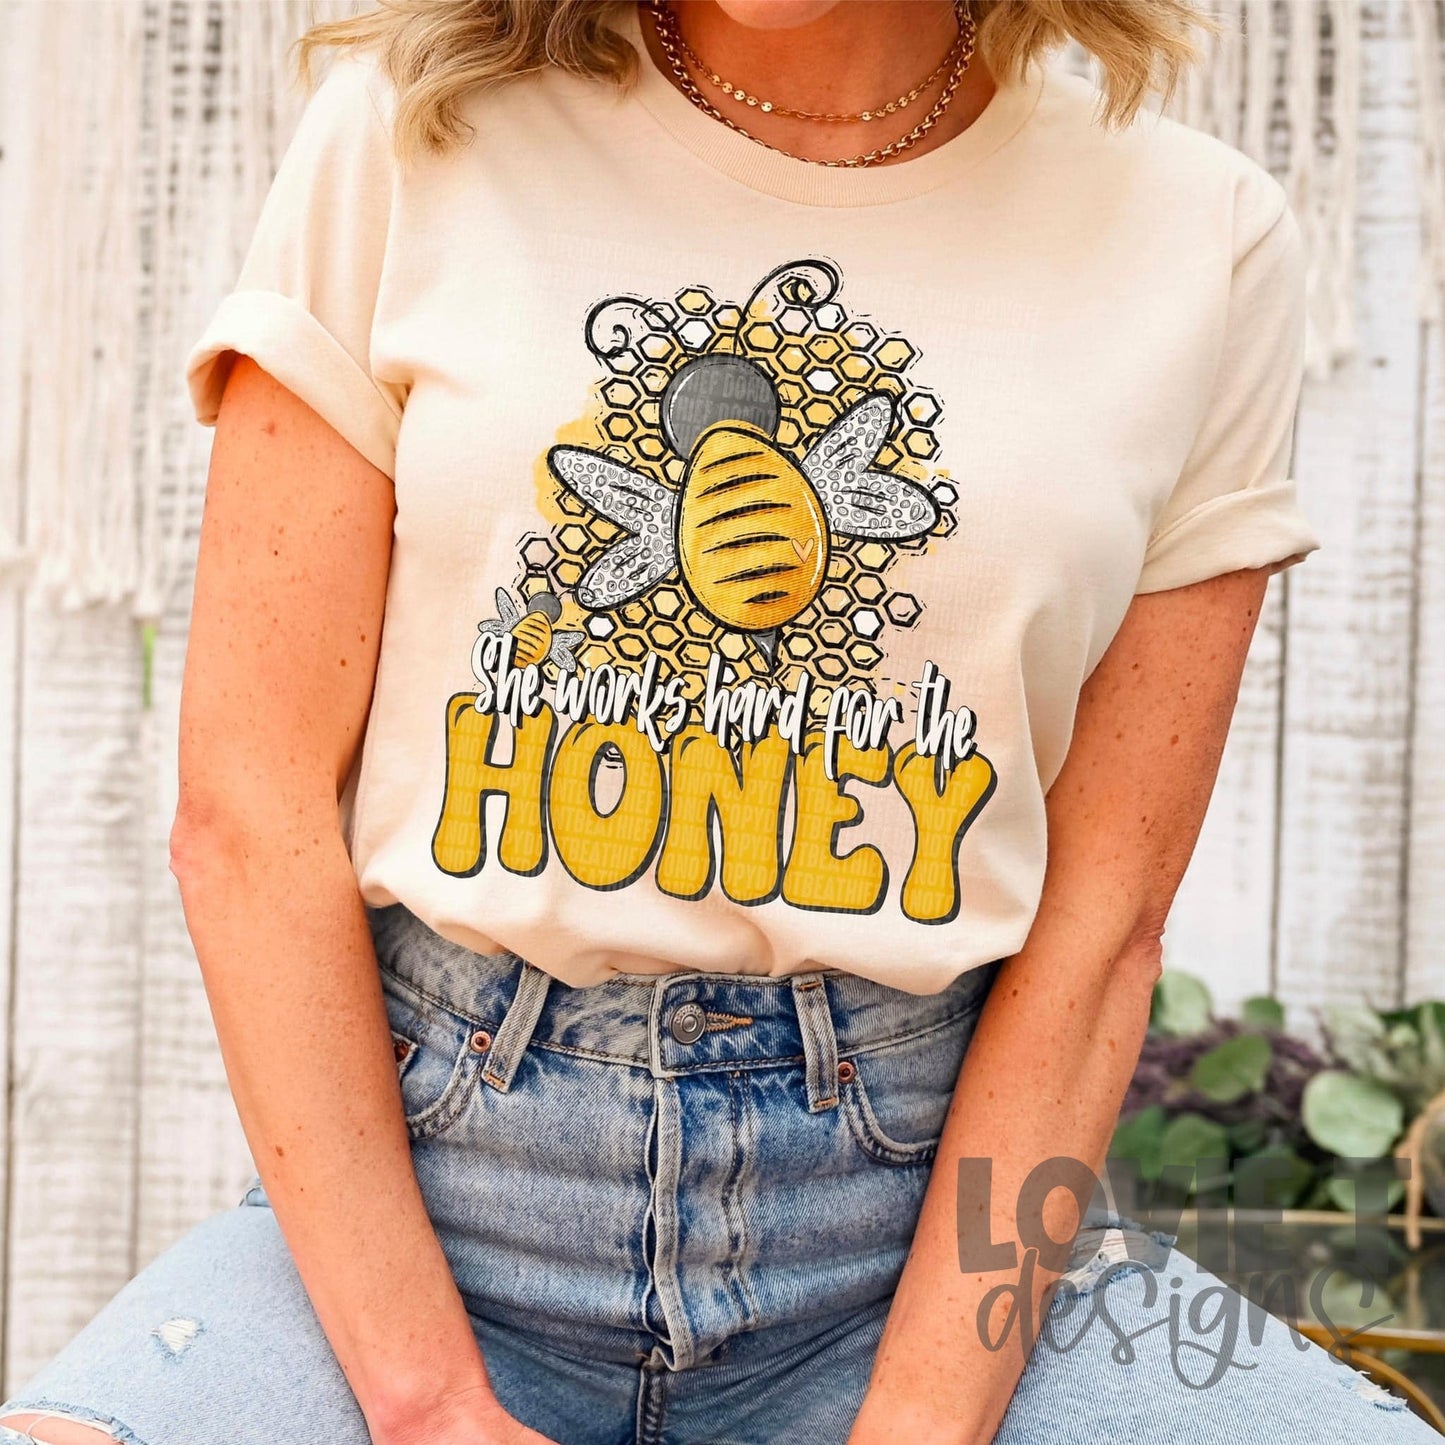 She Works Hard for the Honey